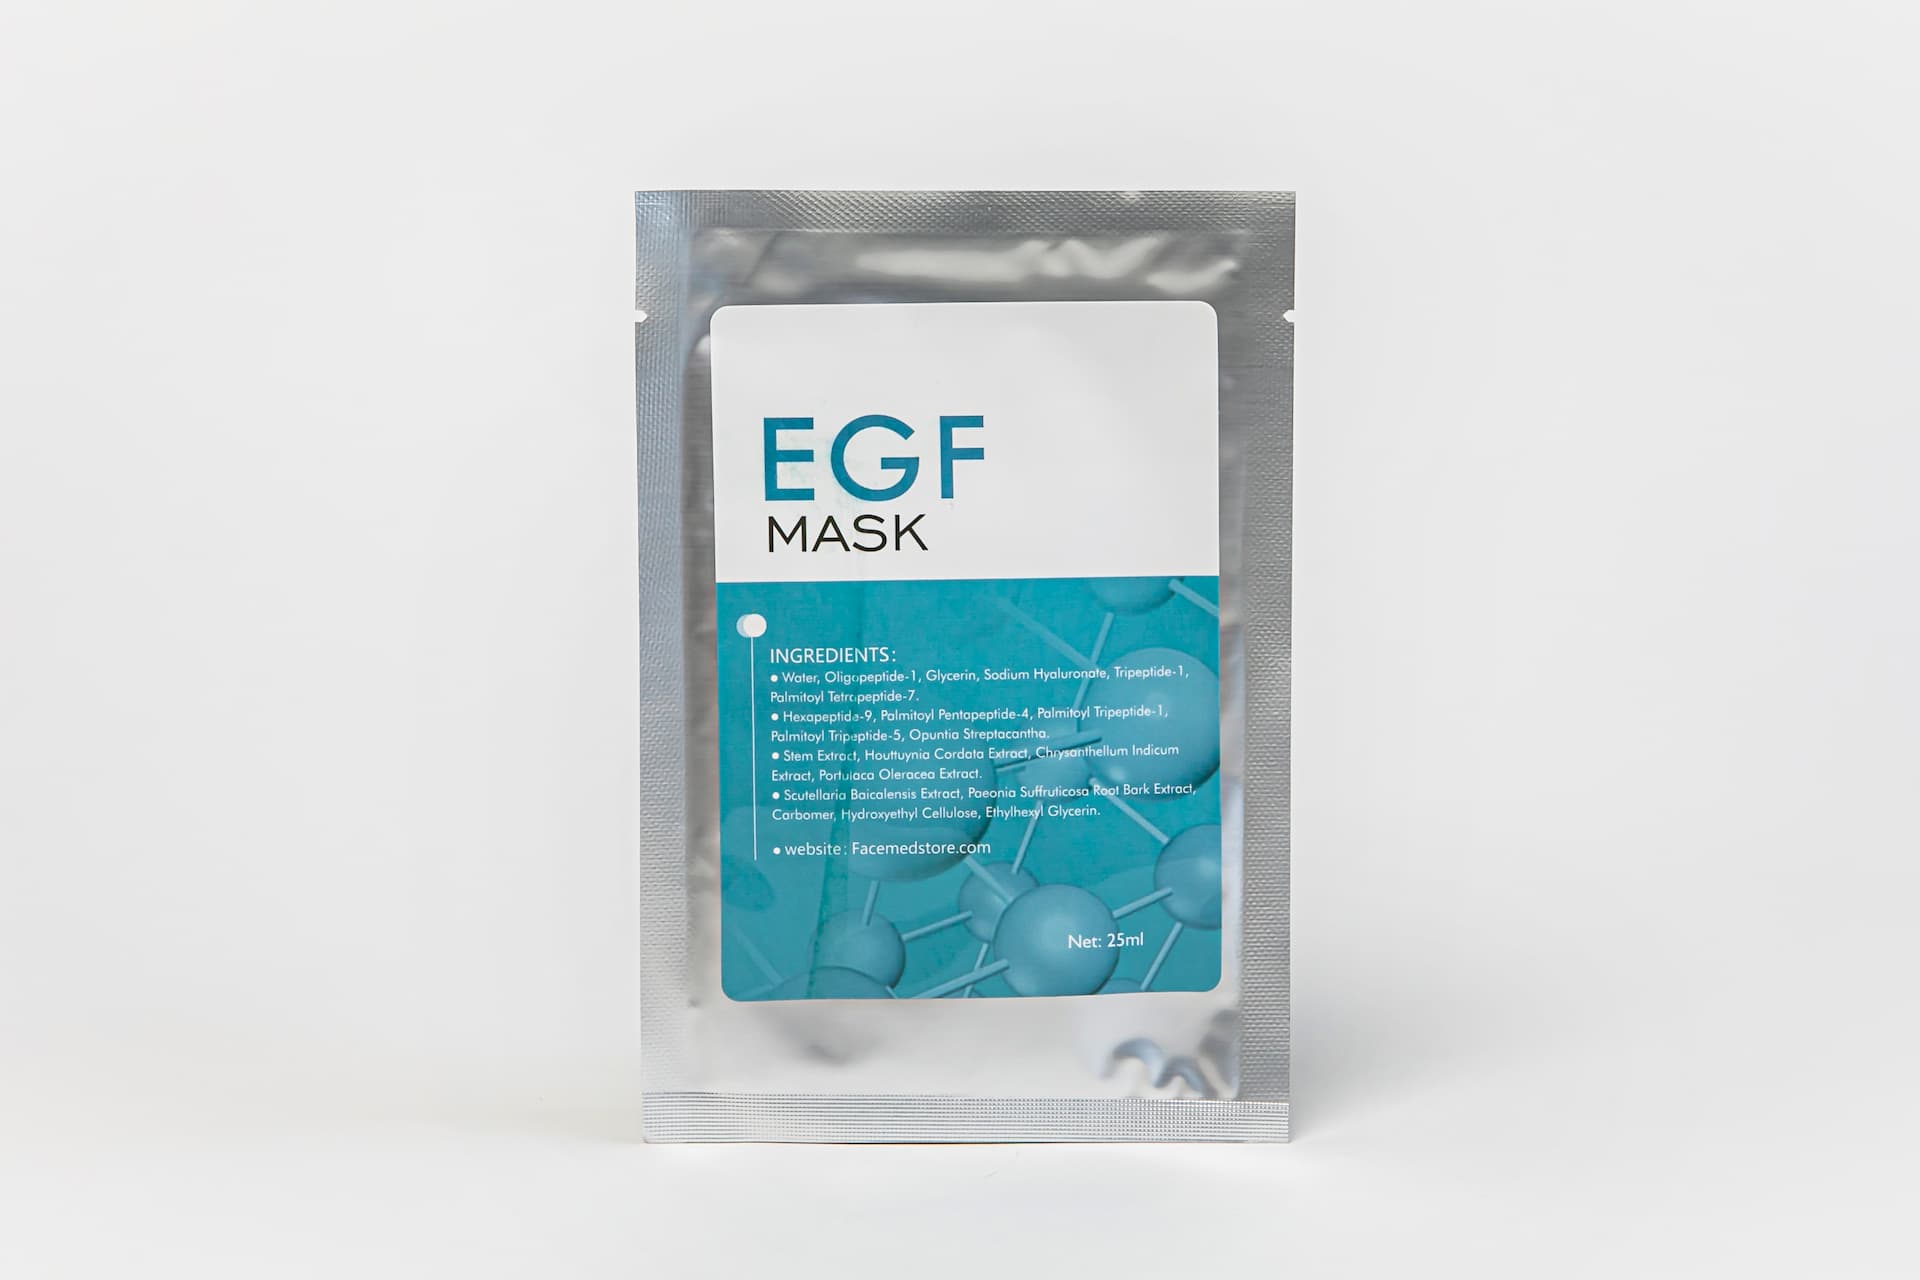 EGF Mask - Pack of 10